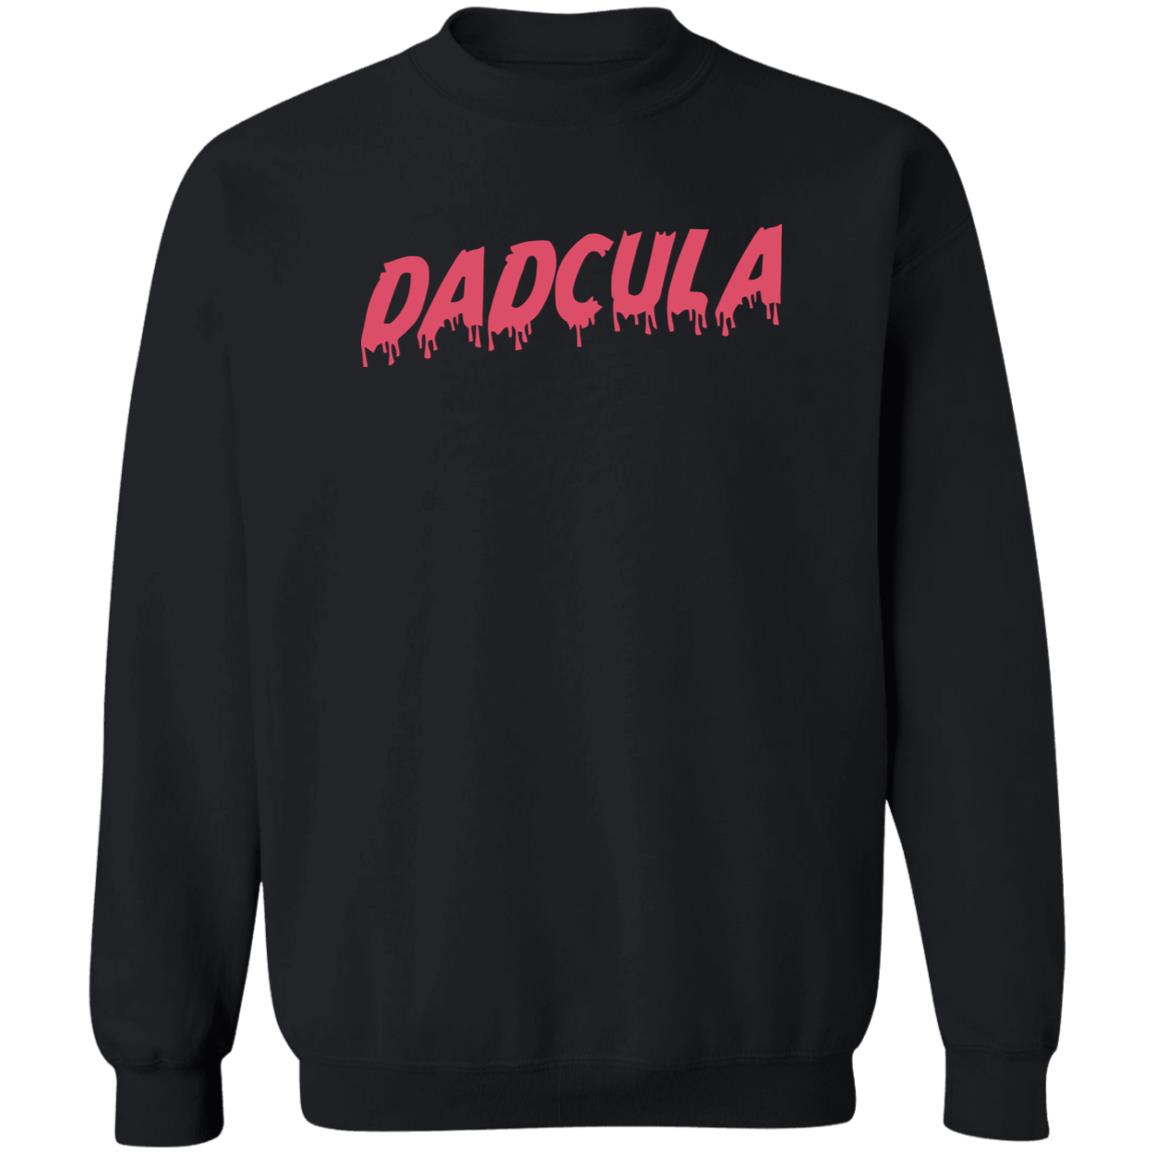 Dadcula Shirt 2